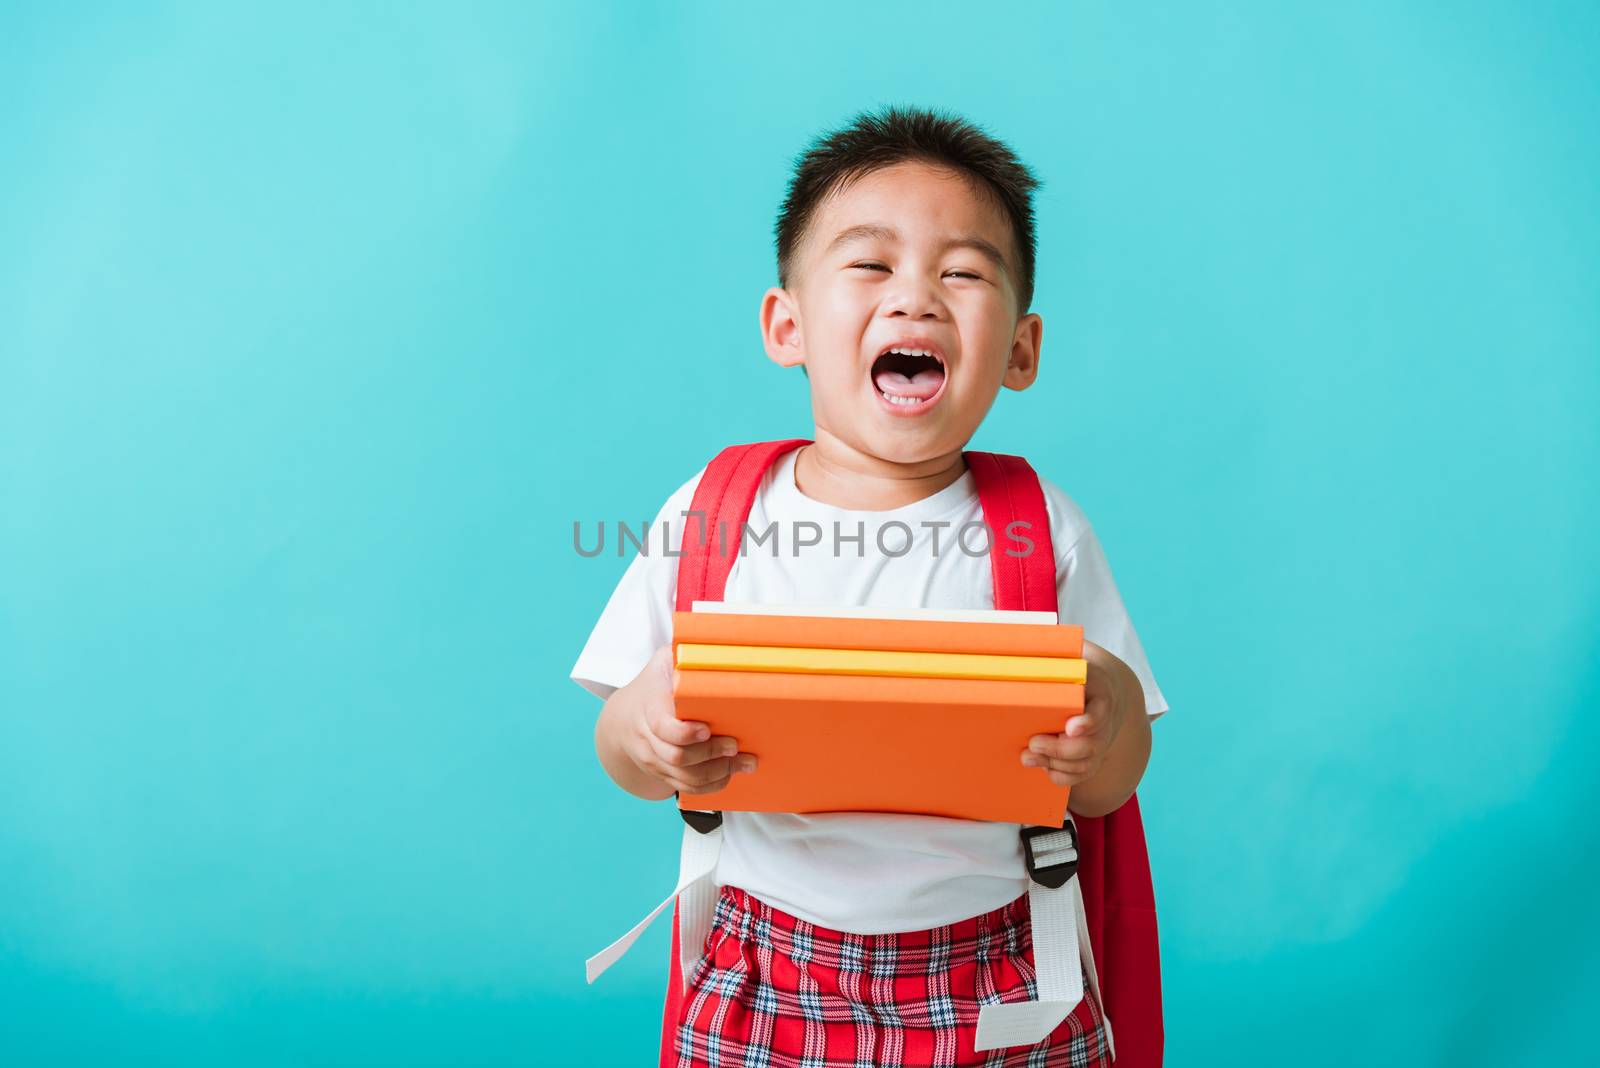 Kid from preschool kindergarten with book and school bag by Sorapop